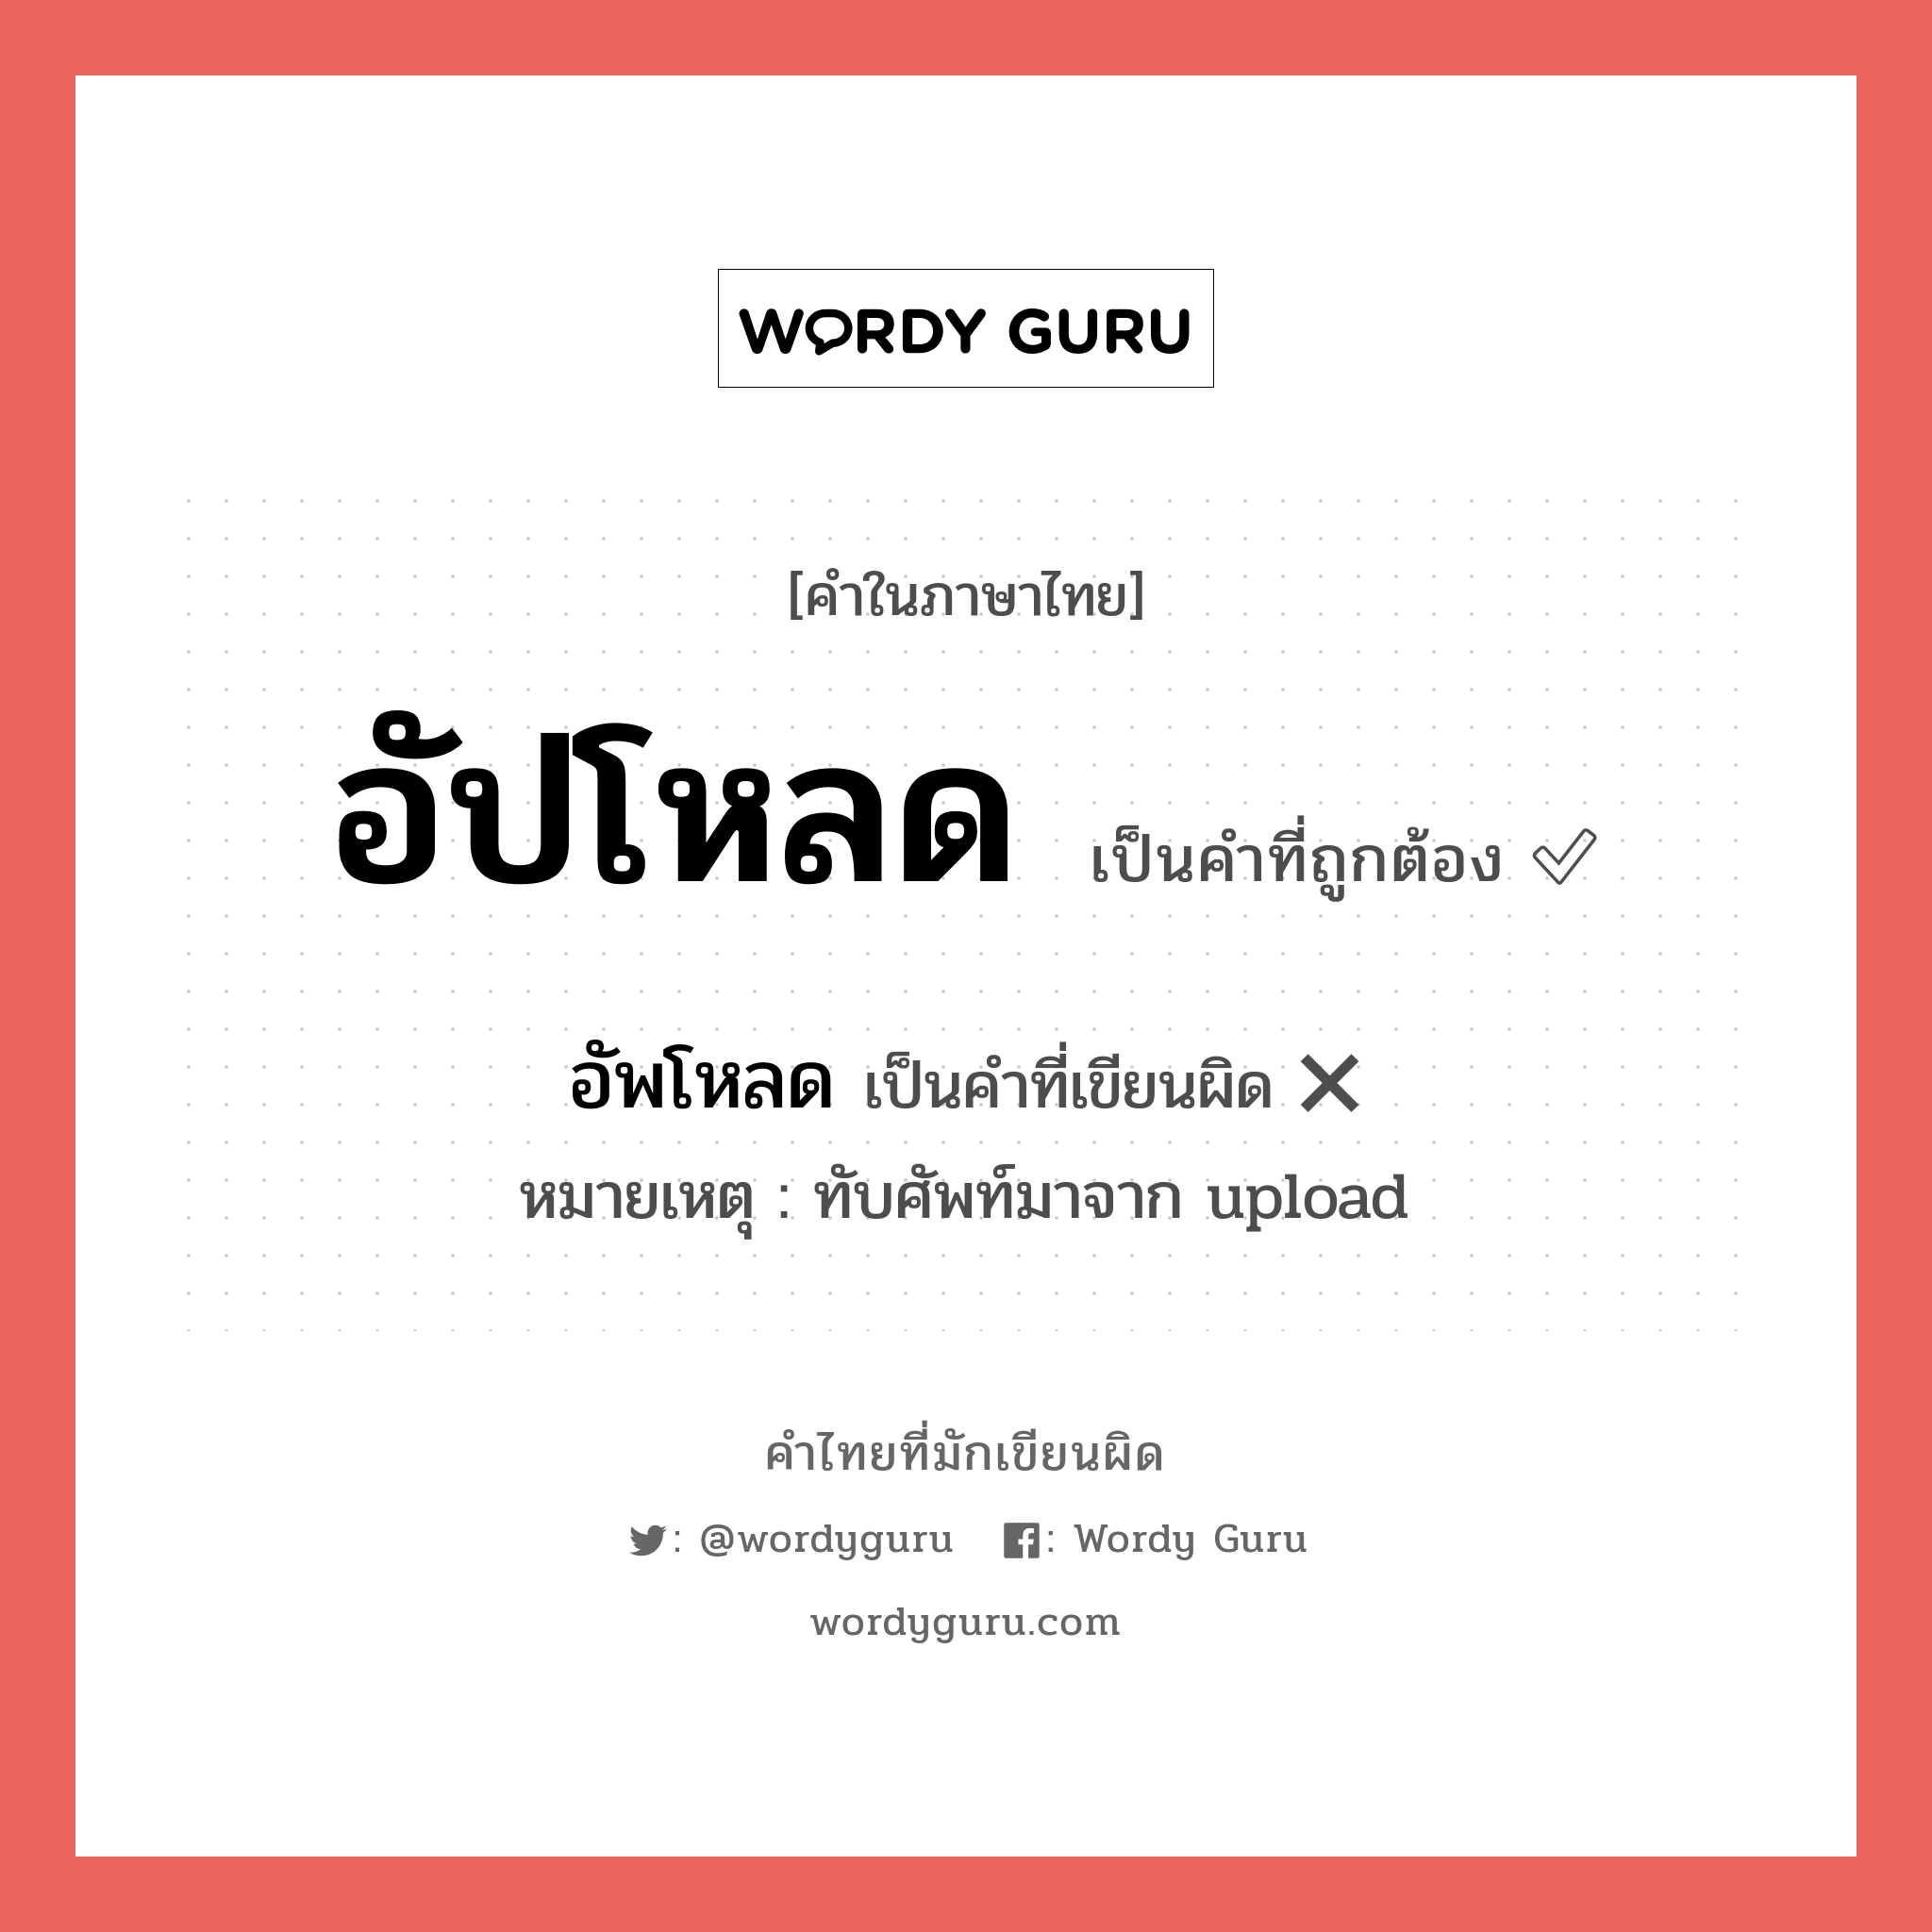 อัปโหลด หรือ อัพโหลด คำไหนเขียนถูก?, คำในภาษาไทยที่มักเขียนผิด อัปโหลด คำที่ผิด ❌ อัพโหลด หมายเหตุ ทับศัพท์มาจาก upload